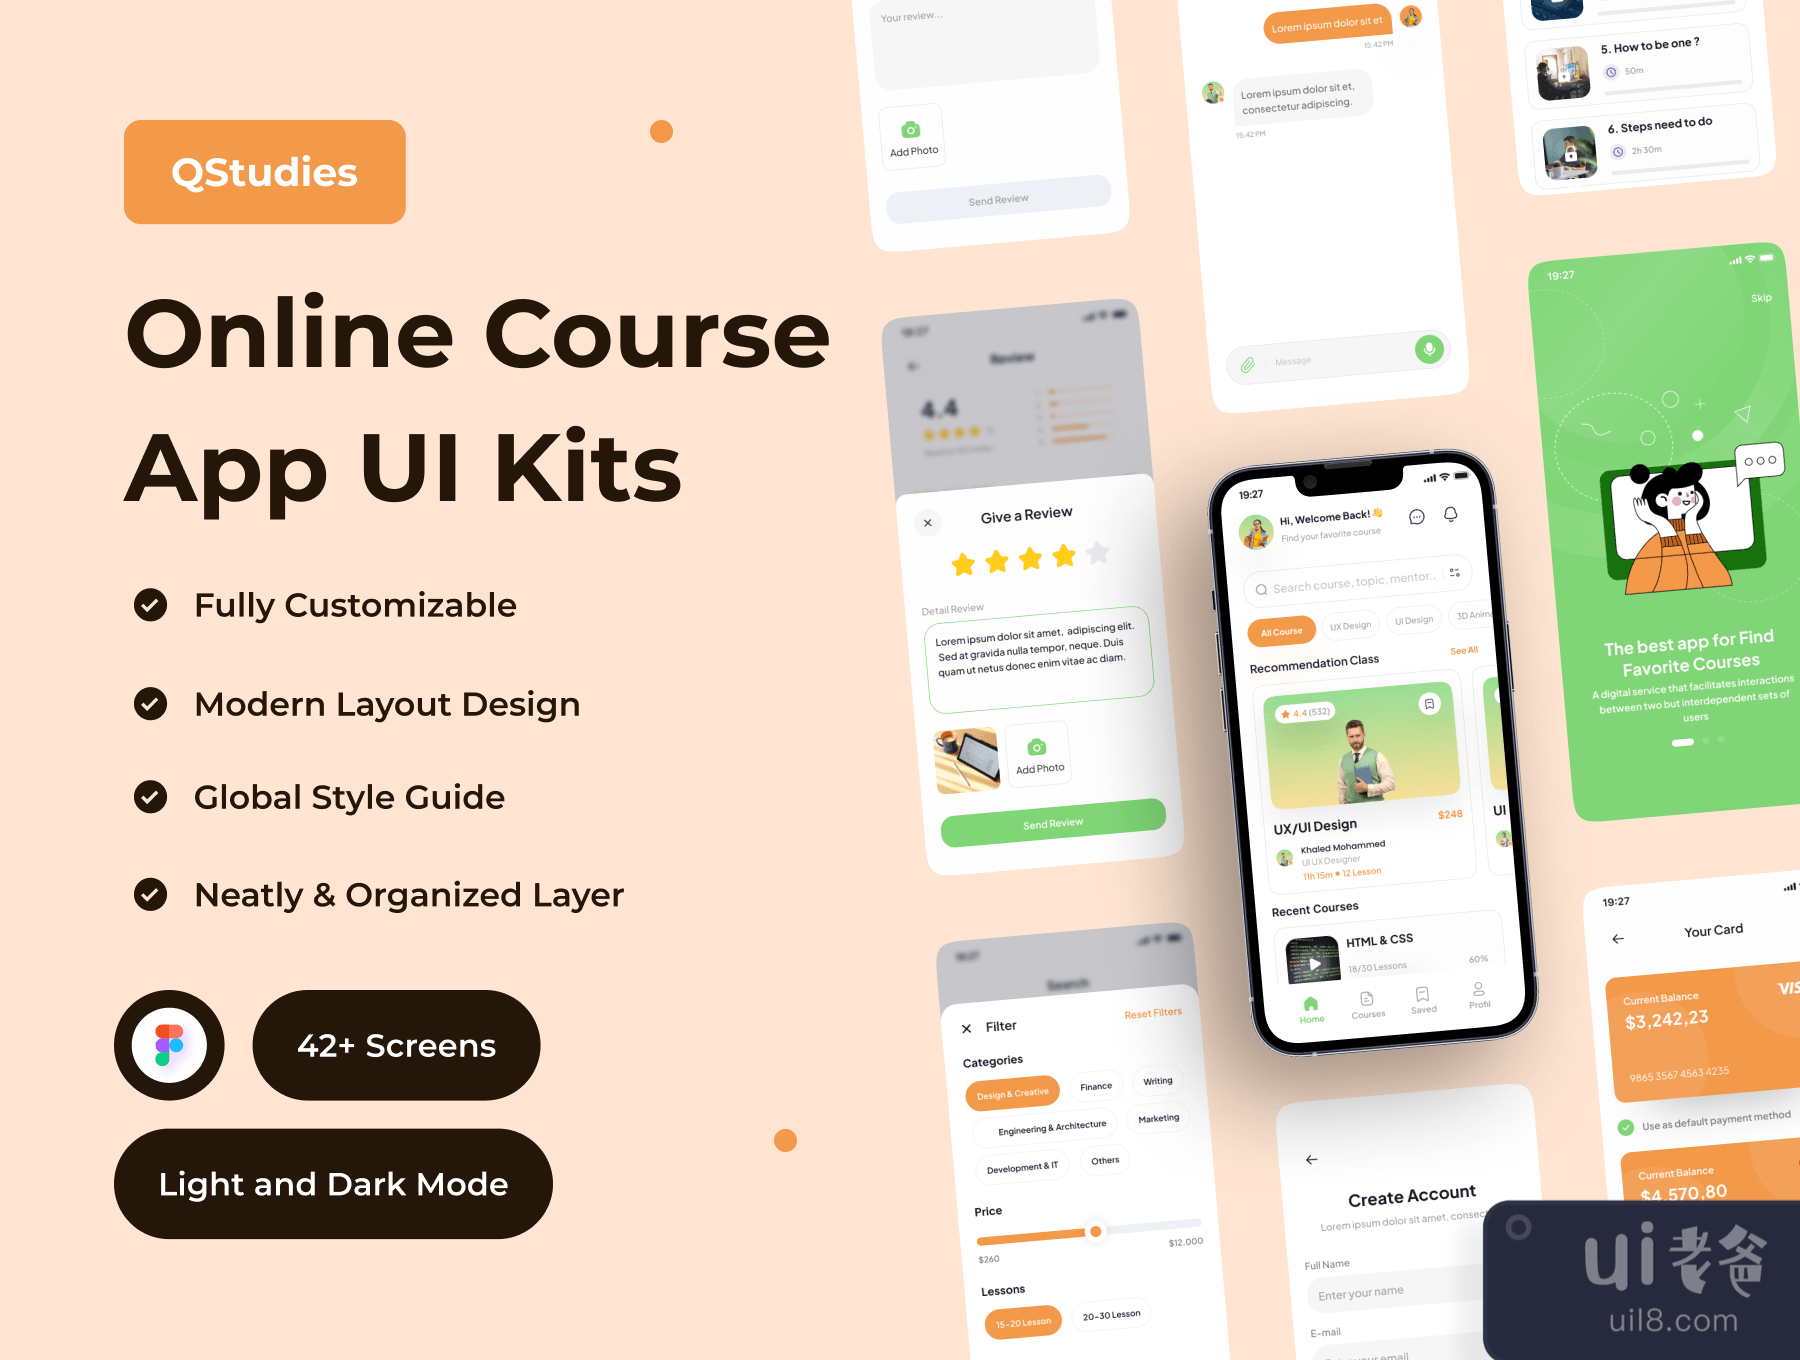 Qstudies - 在线课程应用程序UI套件 (Qstudies - Online Course App UI Kit)插图